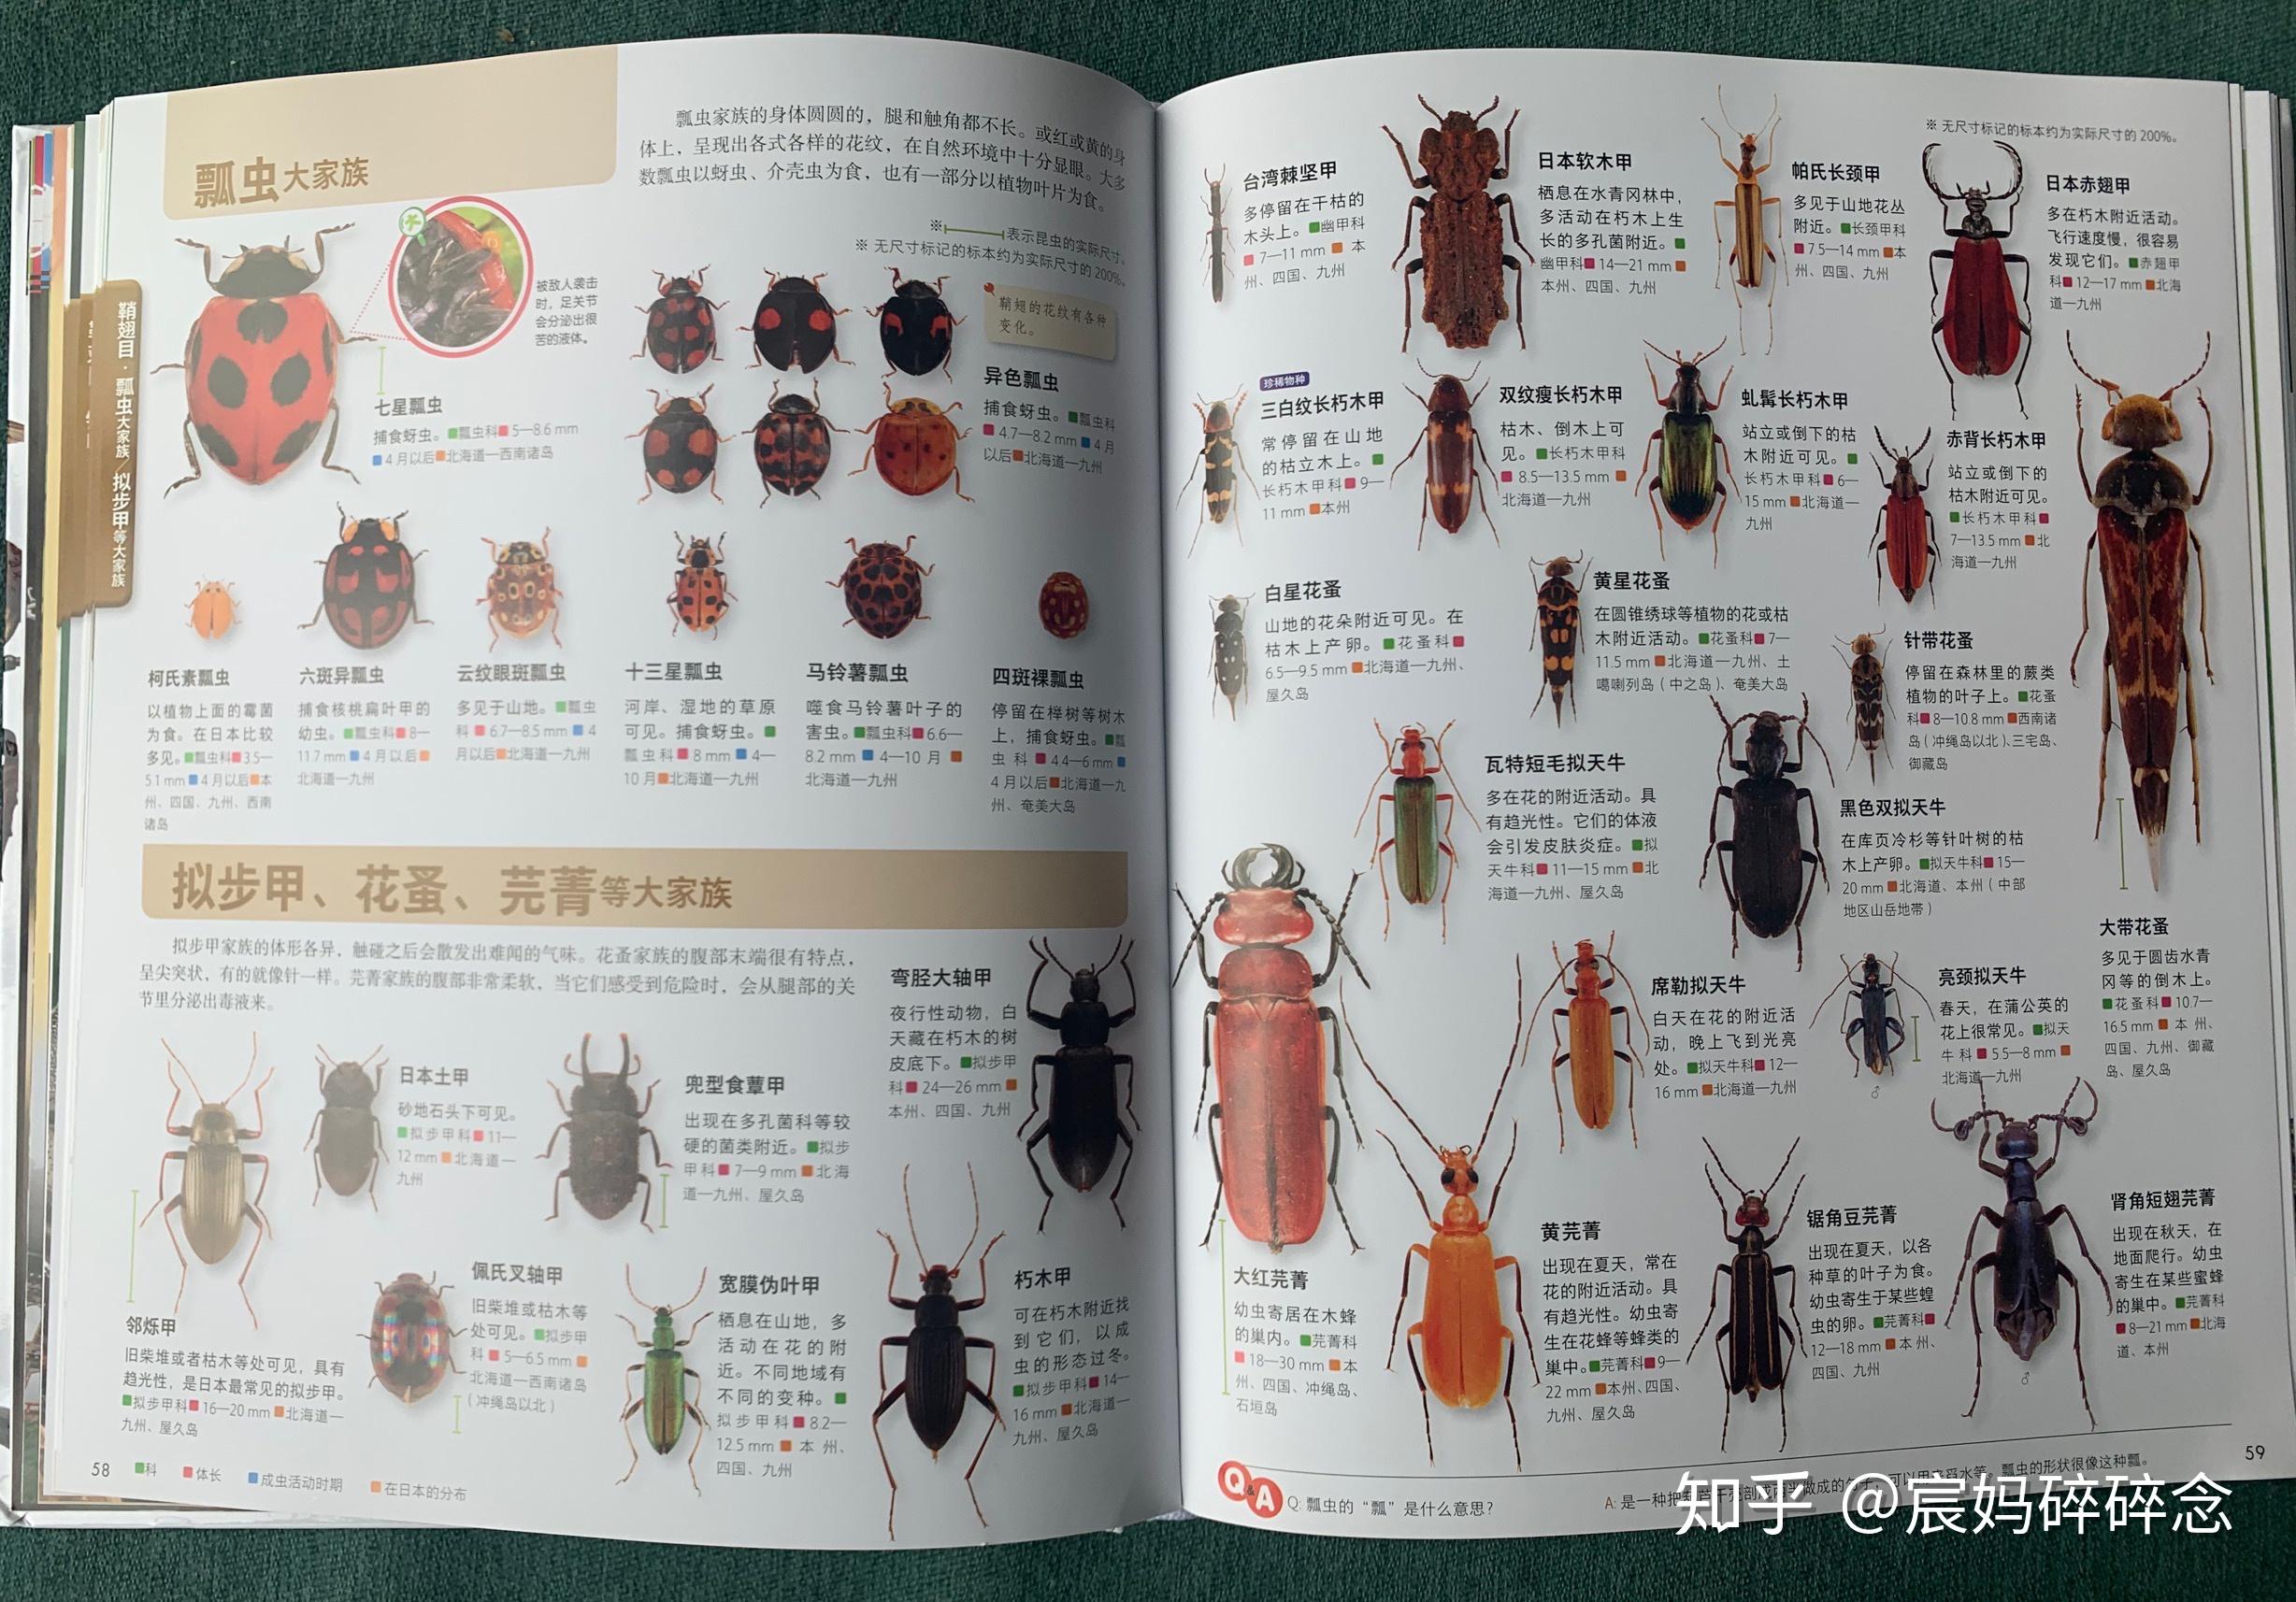 日本讲谈社当家科普图鉴,孩子碾压成人的昆虫集,慎点!